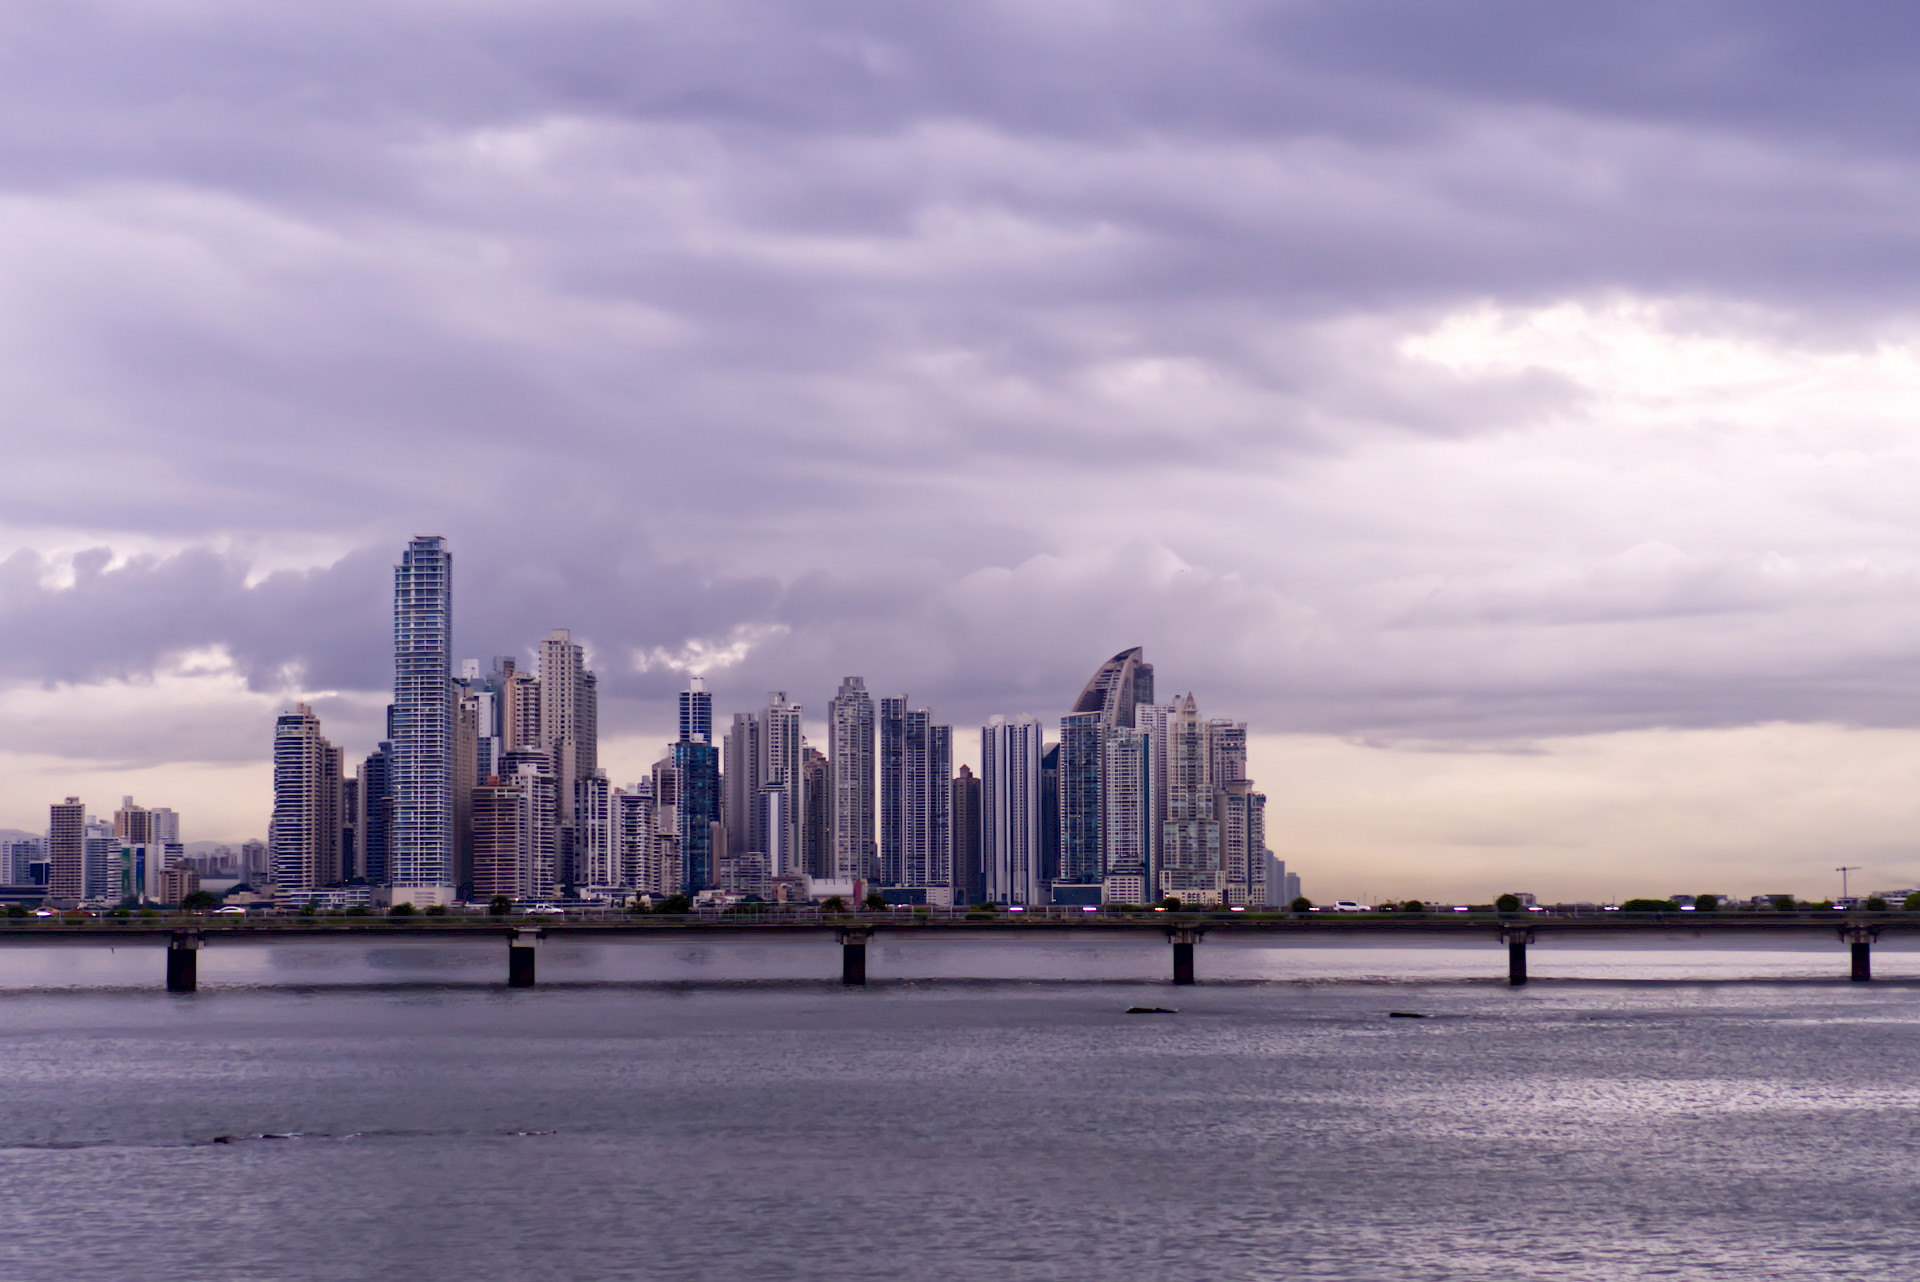 Vista del tramo marino. 
La bahía de Panamá.
El skyline de la ciudad de Panamá. 
Se puede ver el parte de Paitilla y Punta Pacífica. El antiguo Trump acualmente Marriott, The Point entre otros.